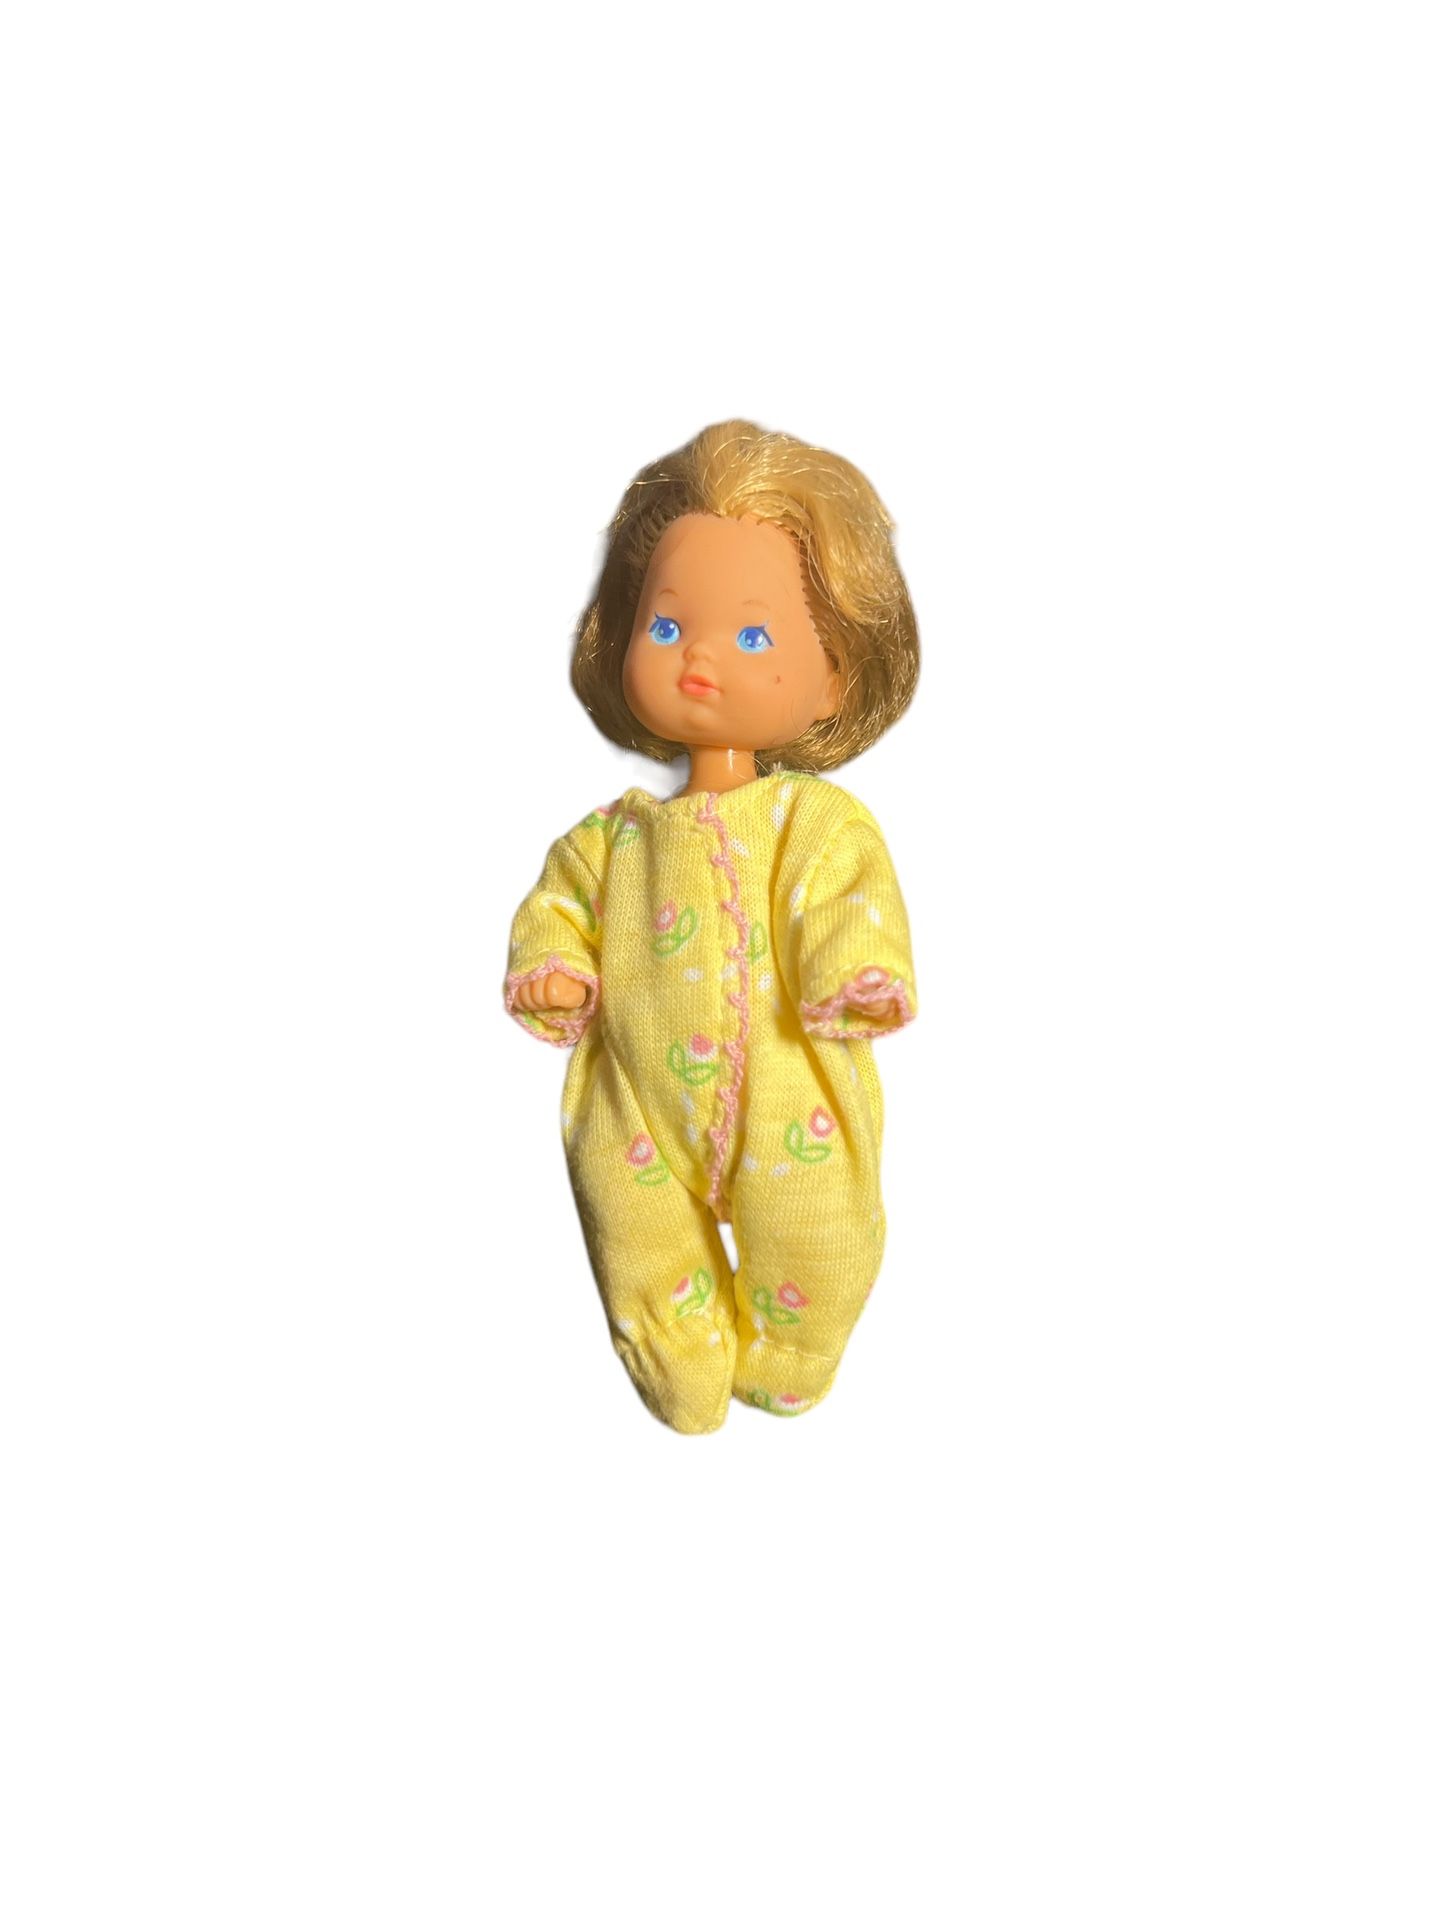 Mattel Heart Family Toddler Baby Doll